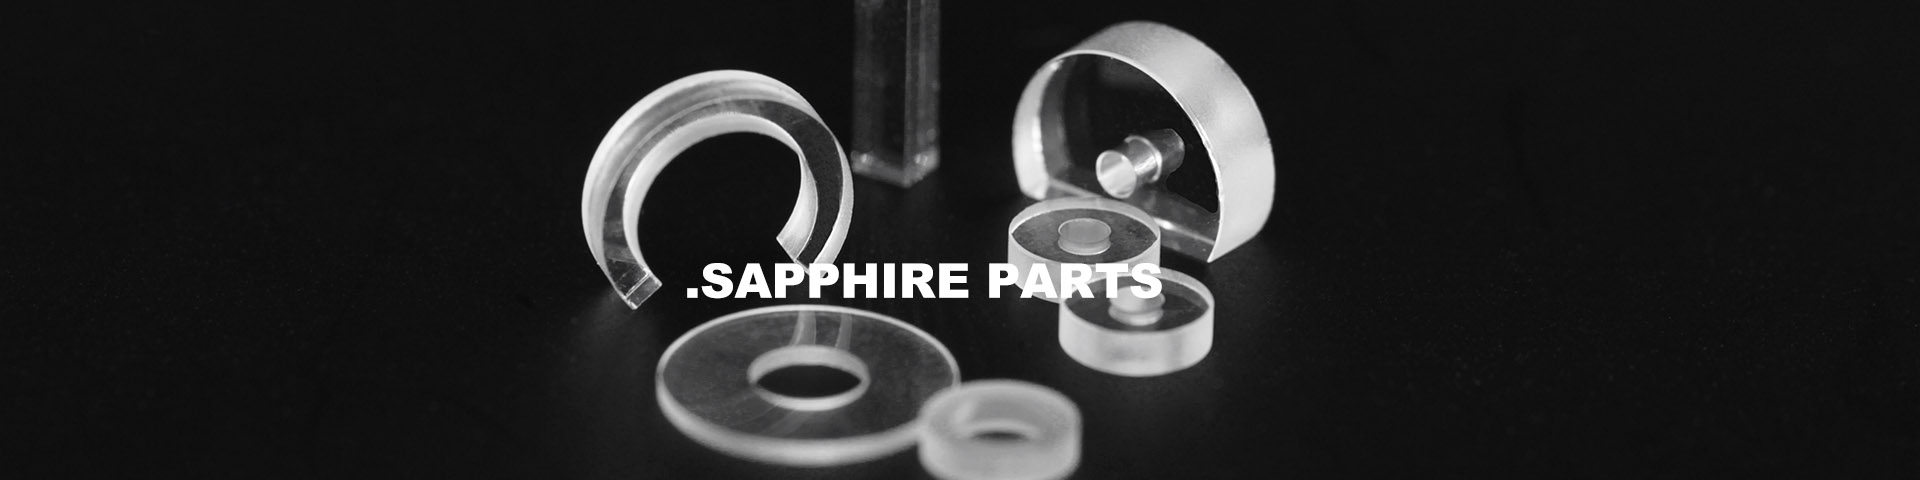 Sapphire Parts